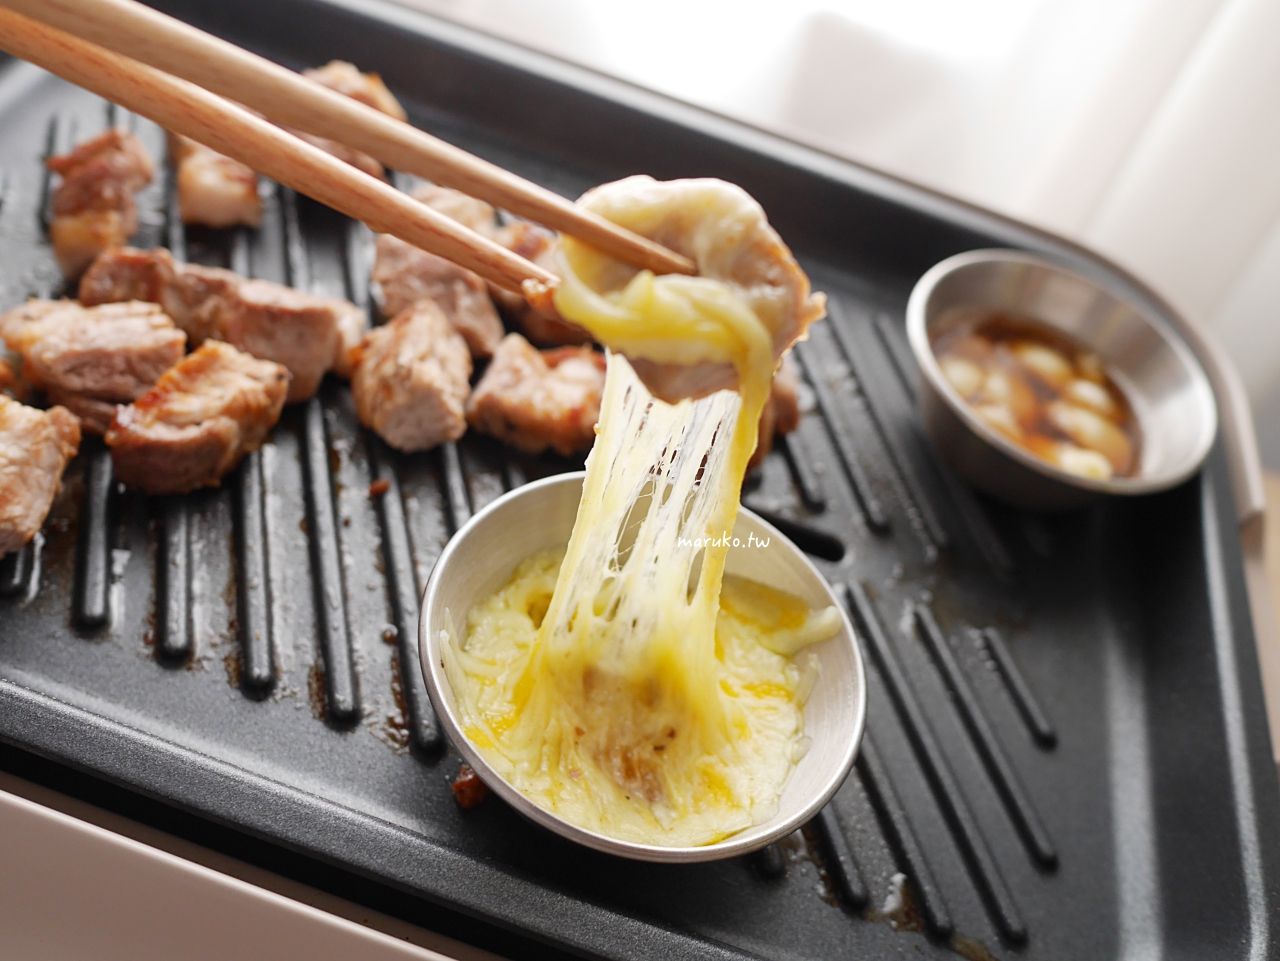 【食譜】韓式烤肉 整塊豬梅花肉怎麼烤？多一個步驟就吃起來更香！ @Maruko與美食有個約會